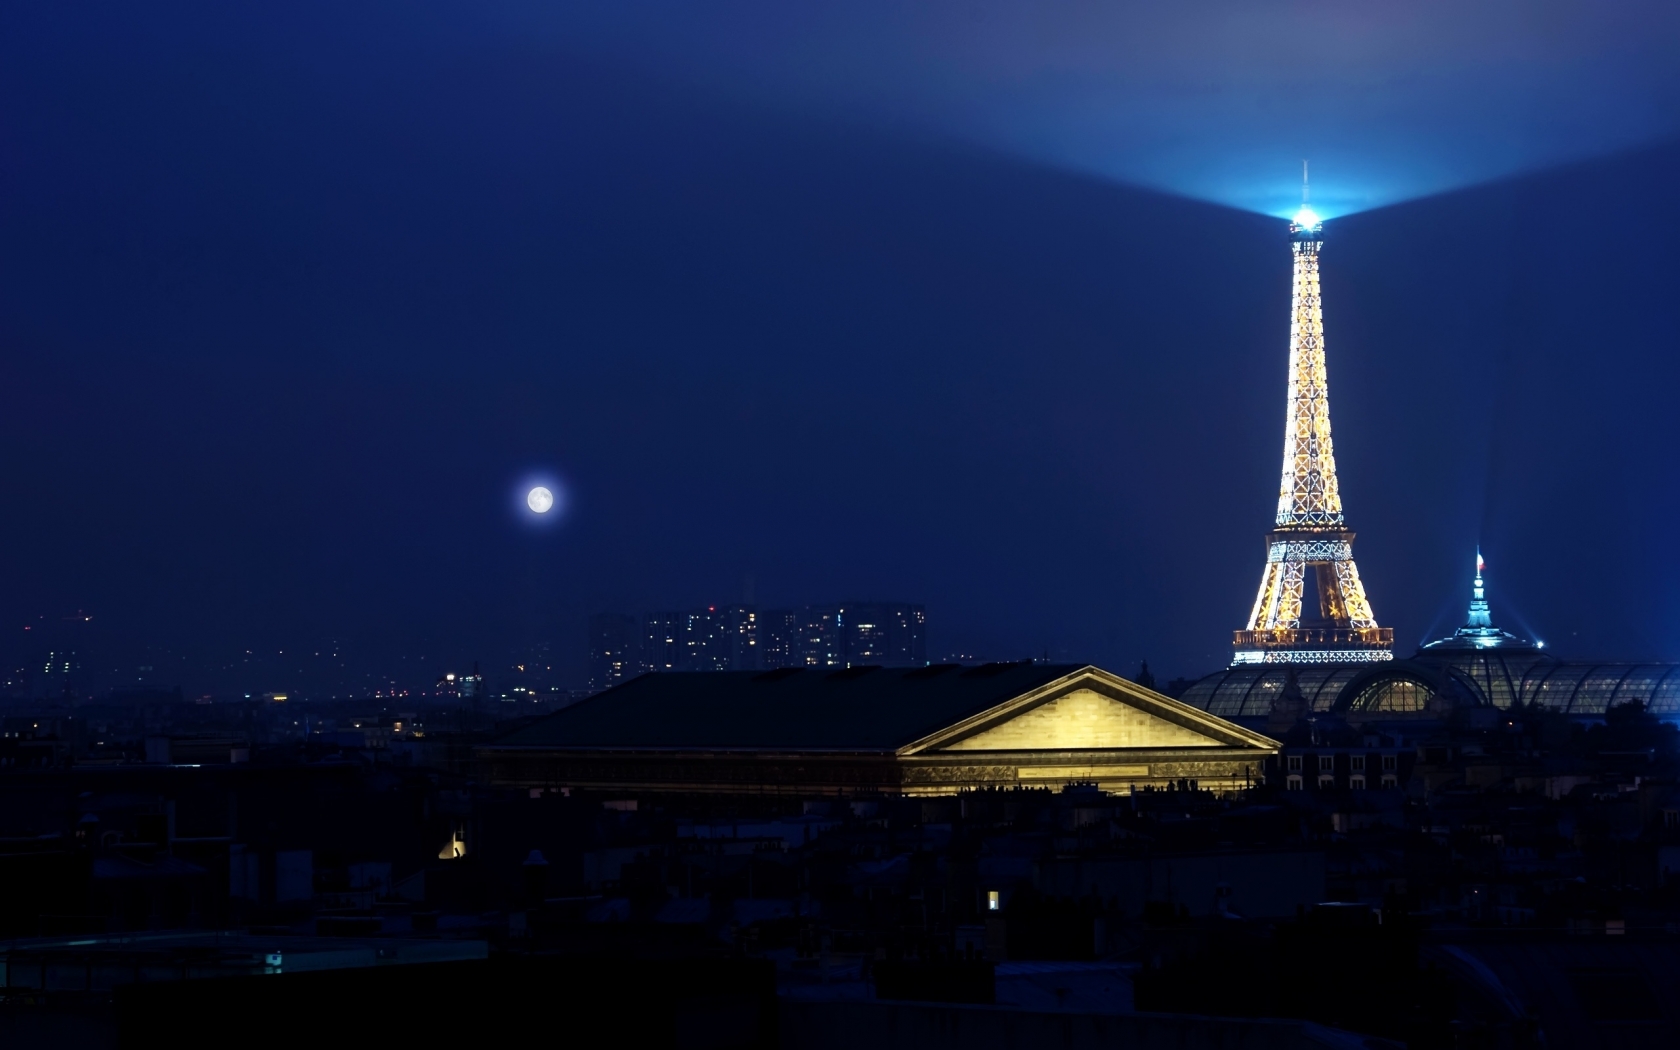 Eiffel Tower Light for 1680 x 1050 widescreen resolution